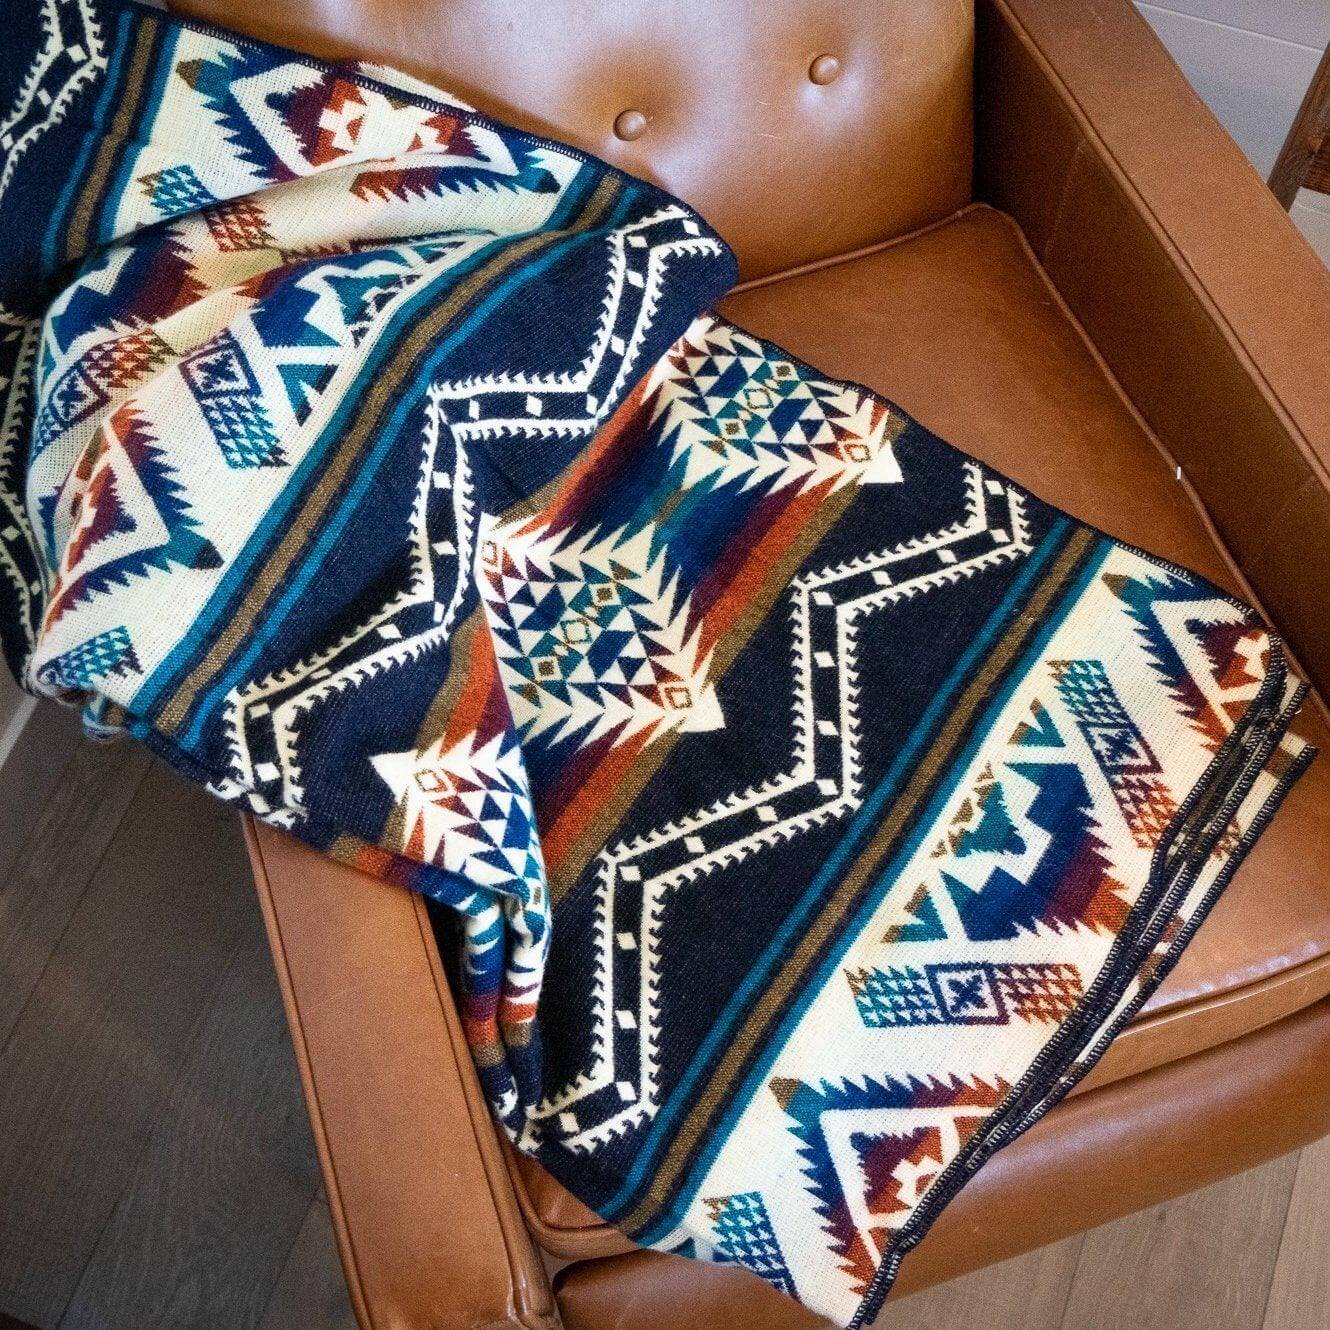 Boho alpaca blanket on leather armchair